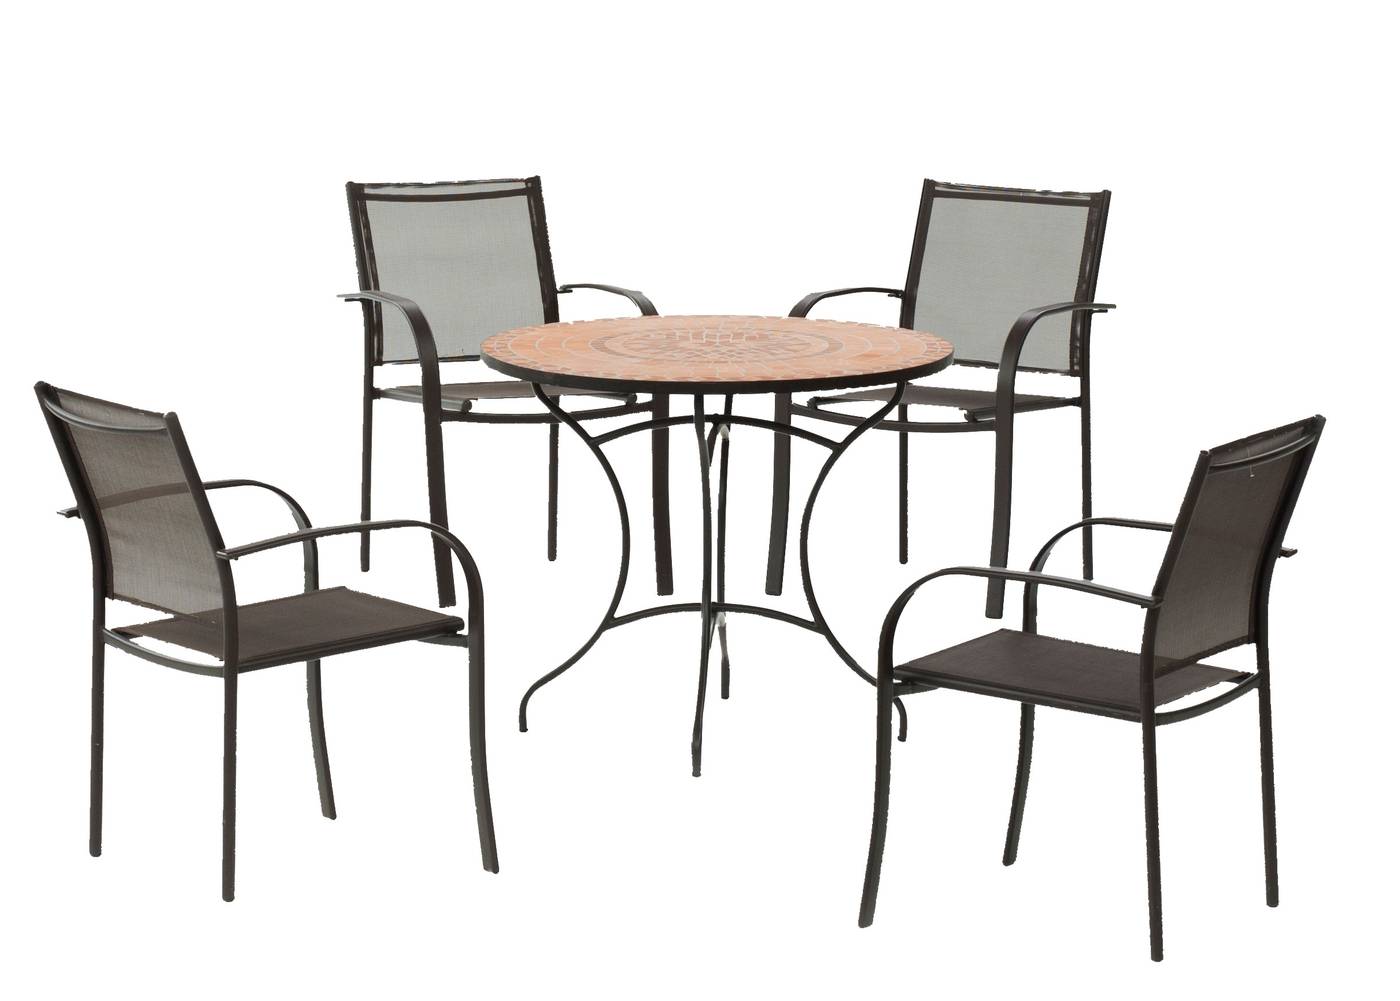 Conjunto de acero para jardín: 1 mesa con panel mosaico + 4 sillones